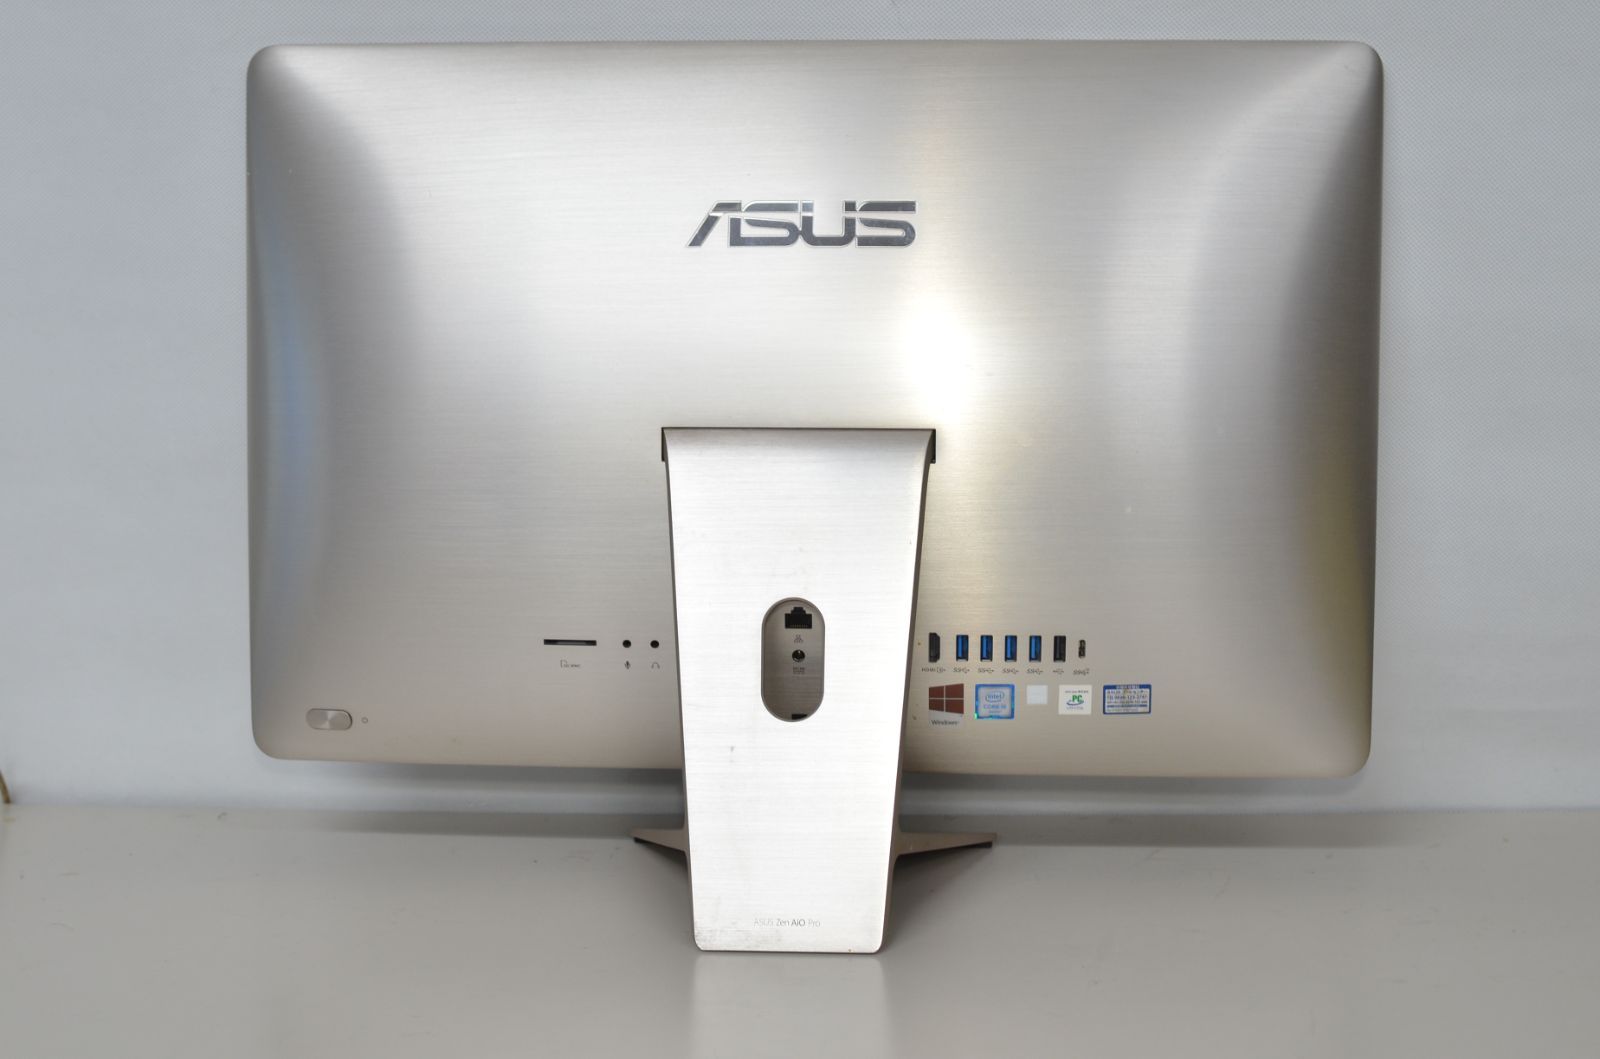 ASUS Zen AiO pro Z220IC I5 6400T - デスクトップ型PC